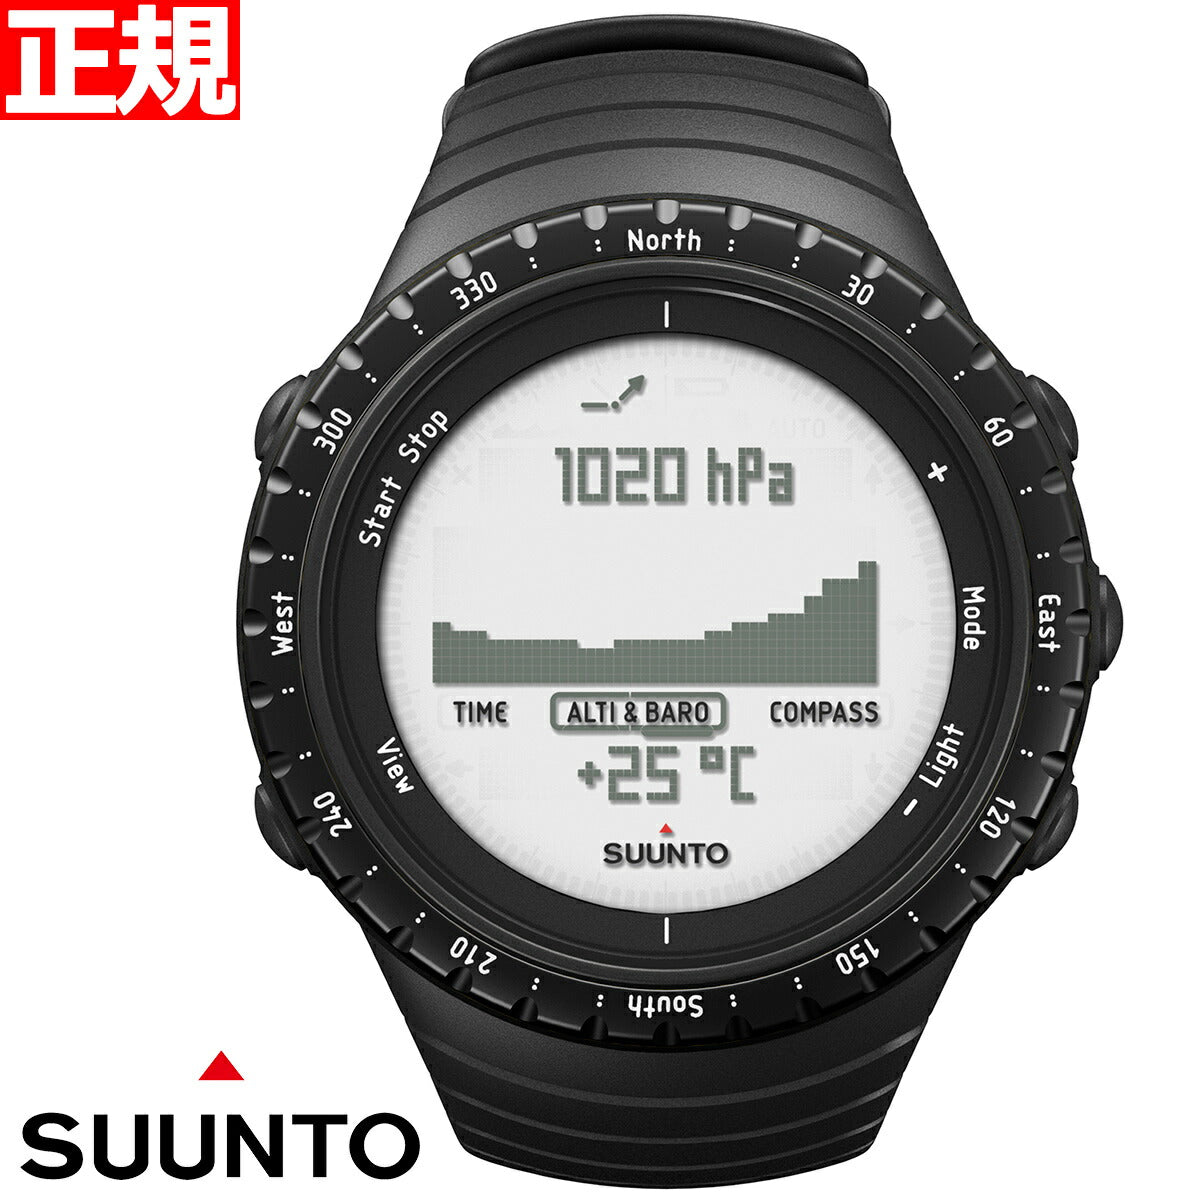 スント コア SUUNTO CORE 腕時計 レギュラーブラック REGULAR BLACK アウトドアウォッチ SS014809000